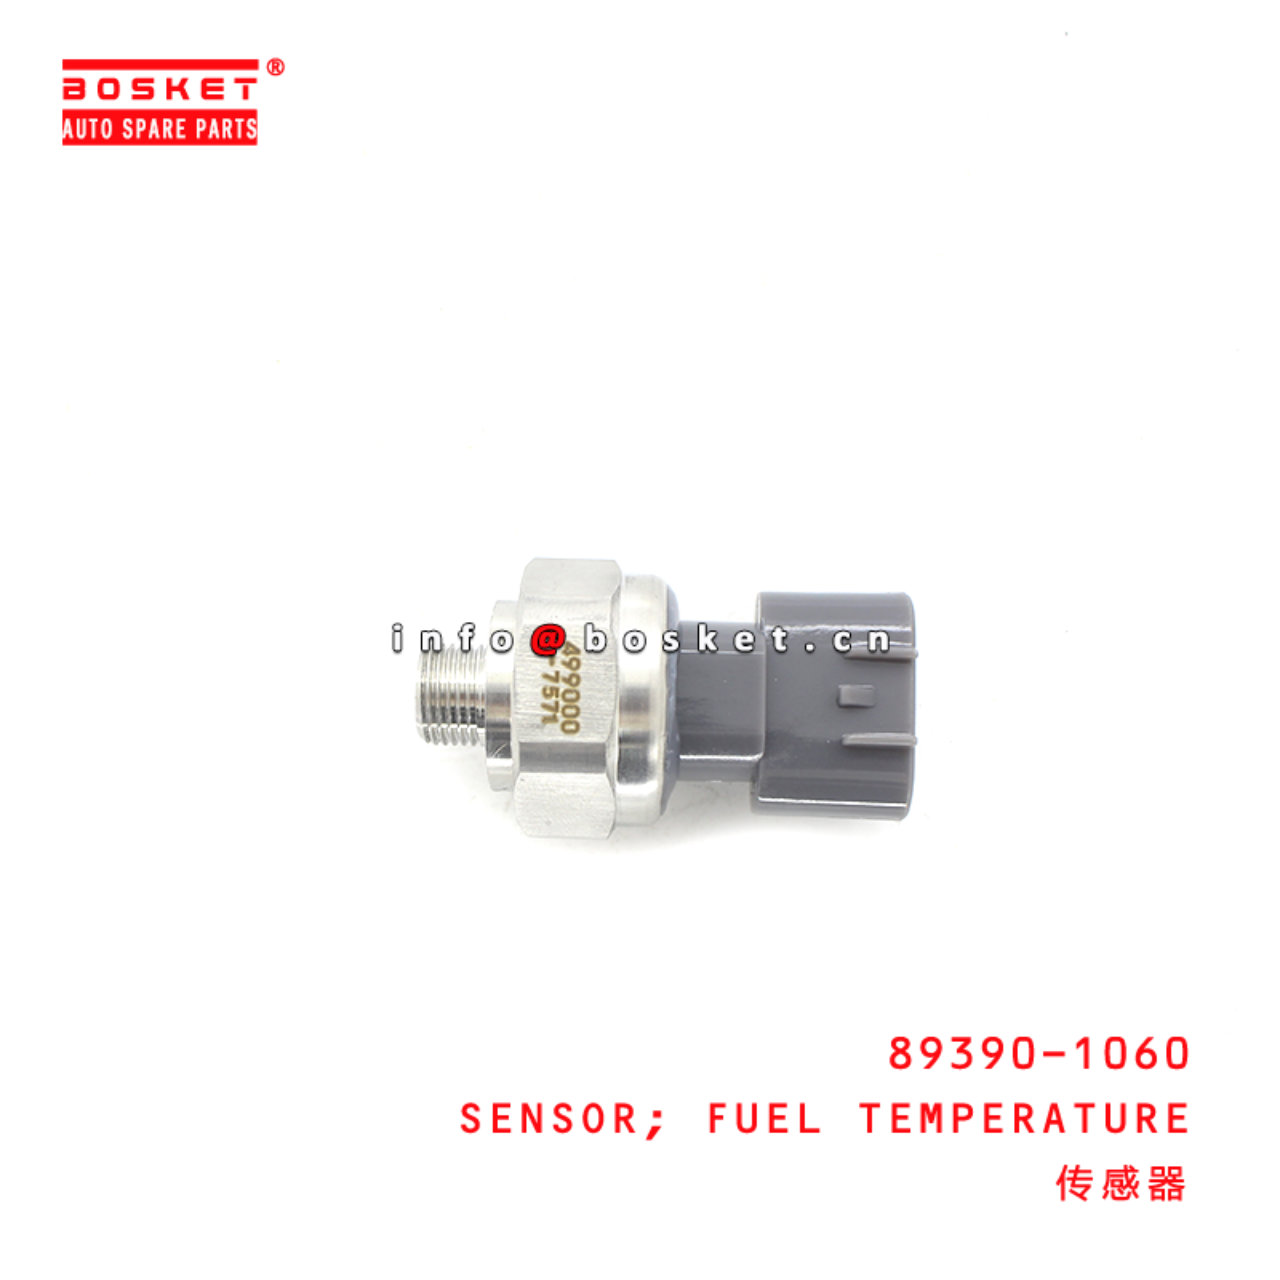 89390-1060 Fuel Temperature Sensor Suitable for ISUZU HINO500 700